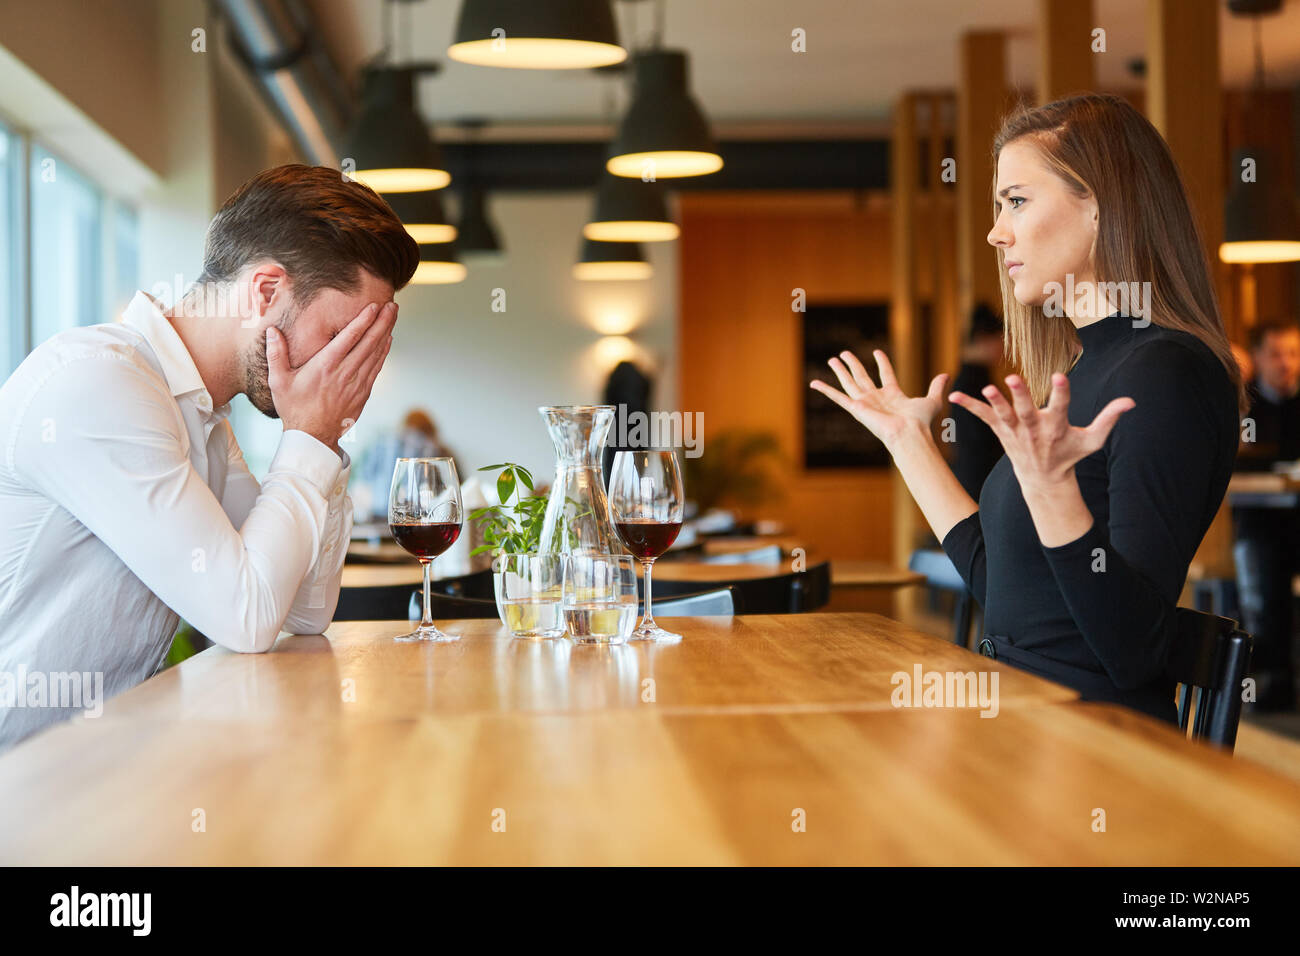 Junge Paare streiten und diskutieren im Restaurant bei einem Glas Wein Stockfoto